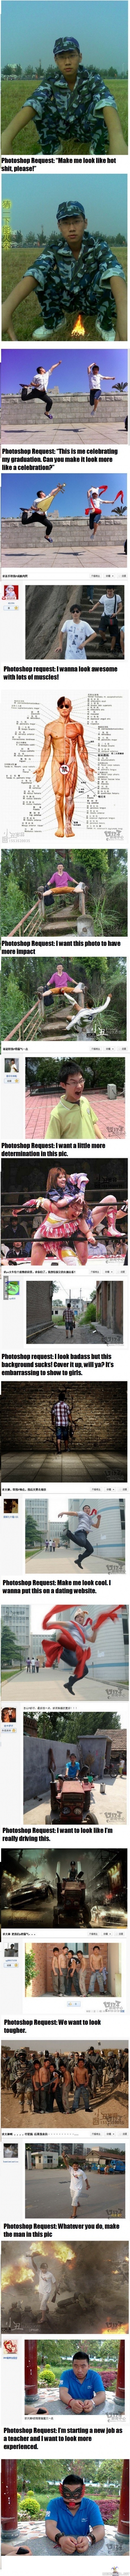 Kiinalaista photoshoppausta pyynnöistä 2 - Osa 1: http://www.riemurasia.net/kuva/Kiinalaista-photoshoppausta-pyynn%C3%B6ist%C3%A4/121677